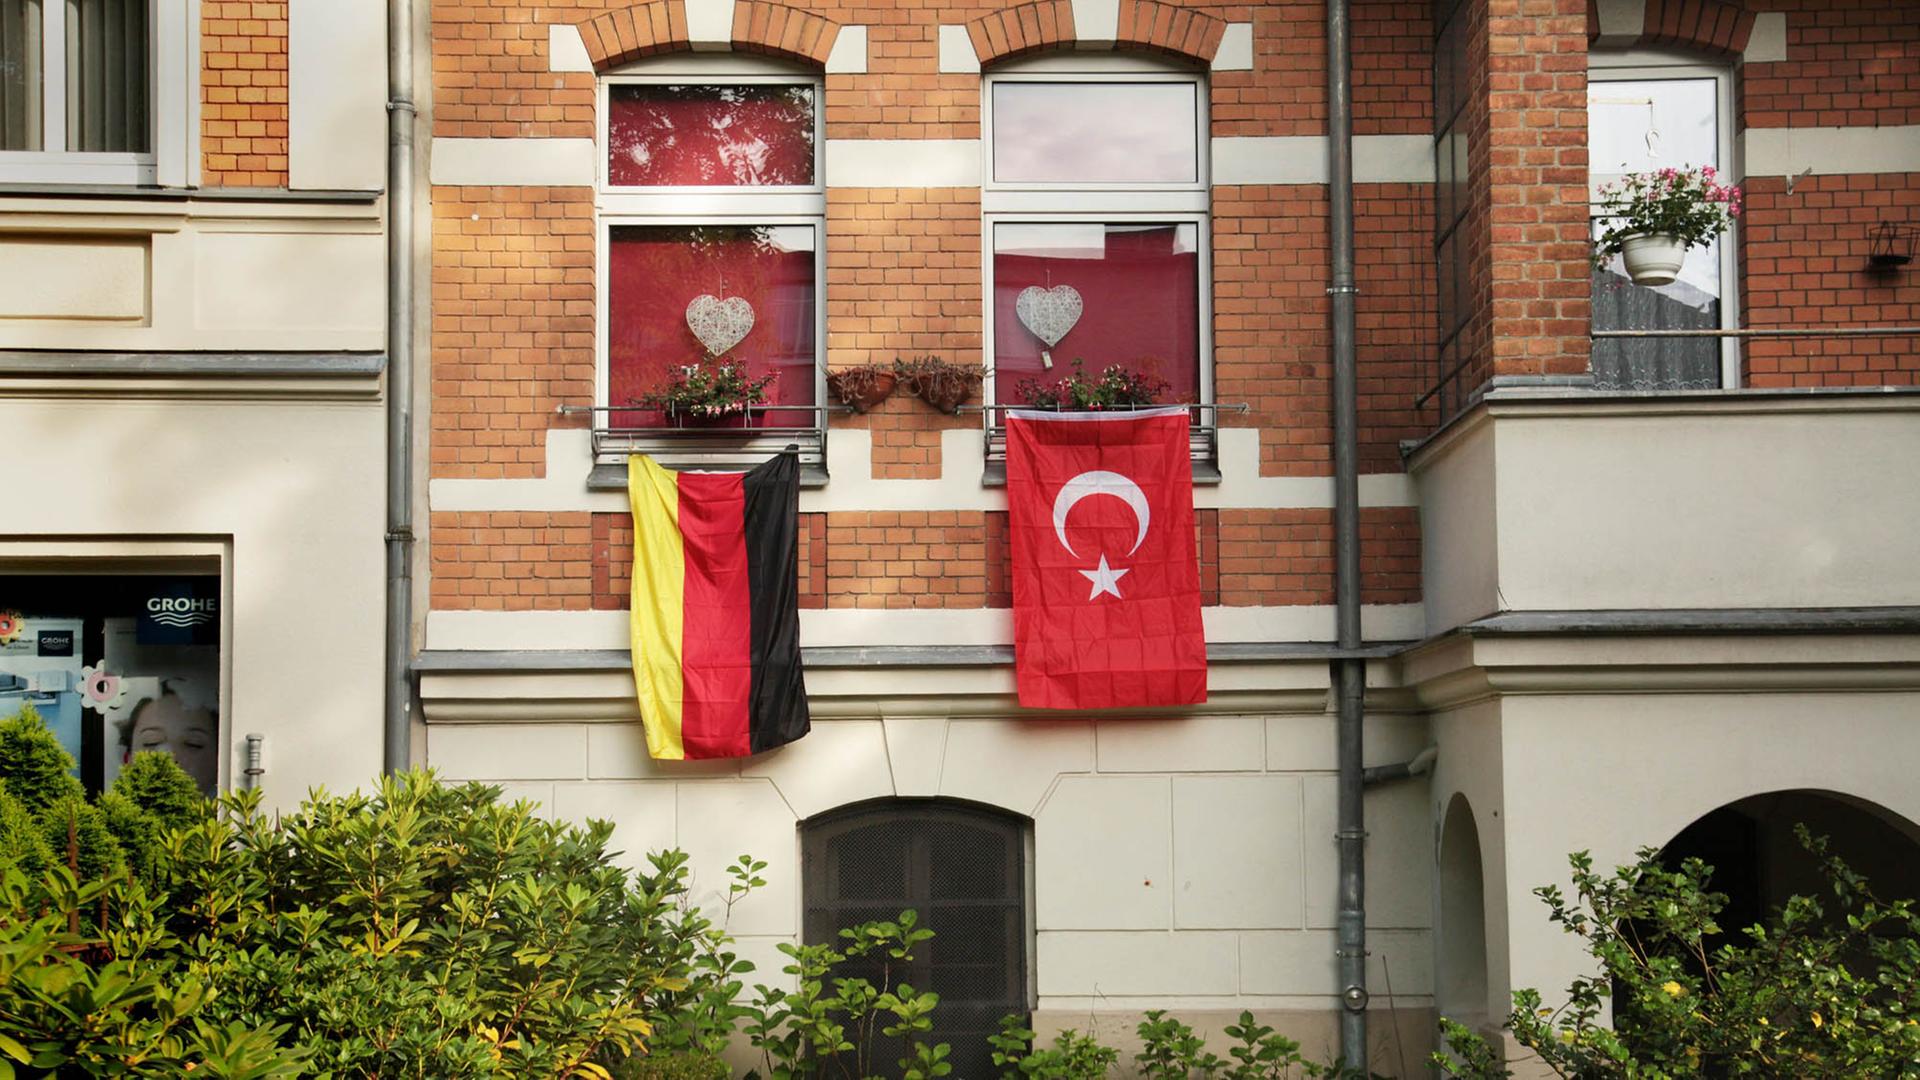 Eine rote, türkische Fahne mit dem Halbmond und dem Stern hängt während der Fußball-EM 2016 in Berlin an einem Haus neben der deutschen Flagge in Schwarz-Rot-Gold